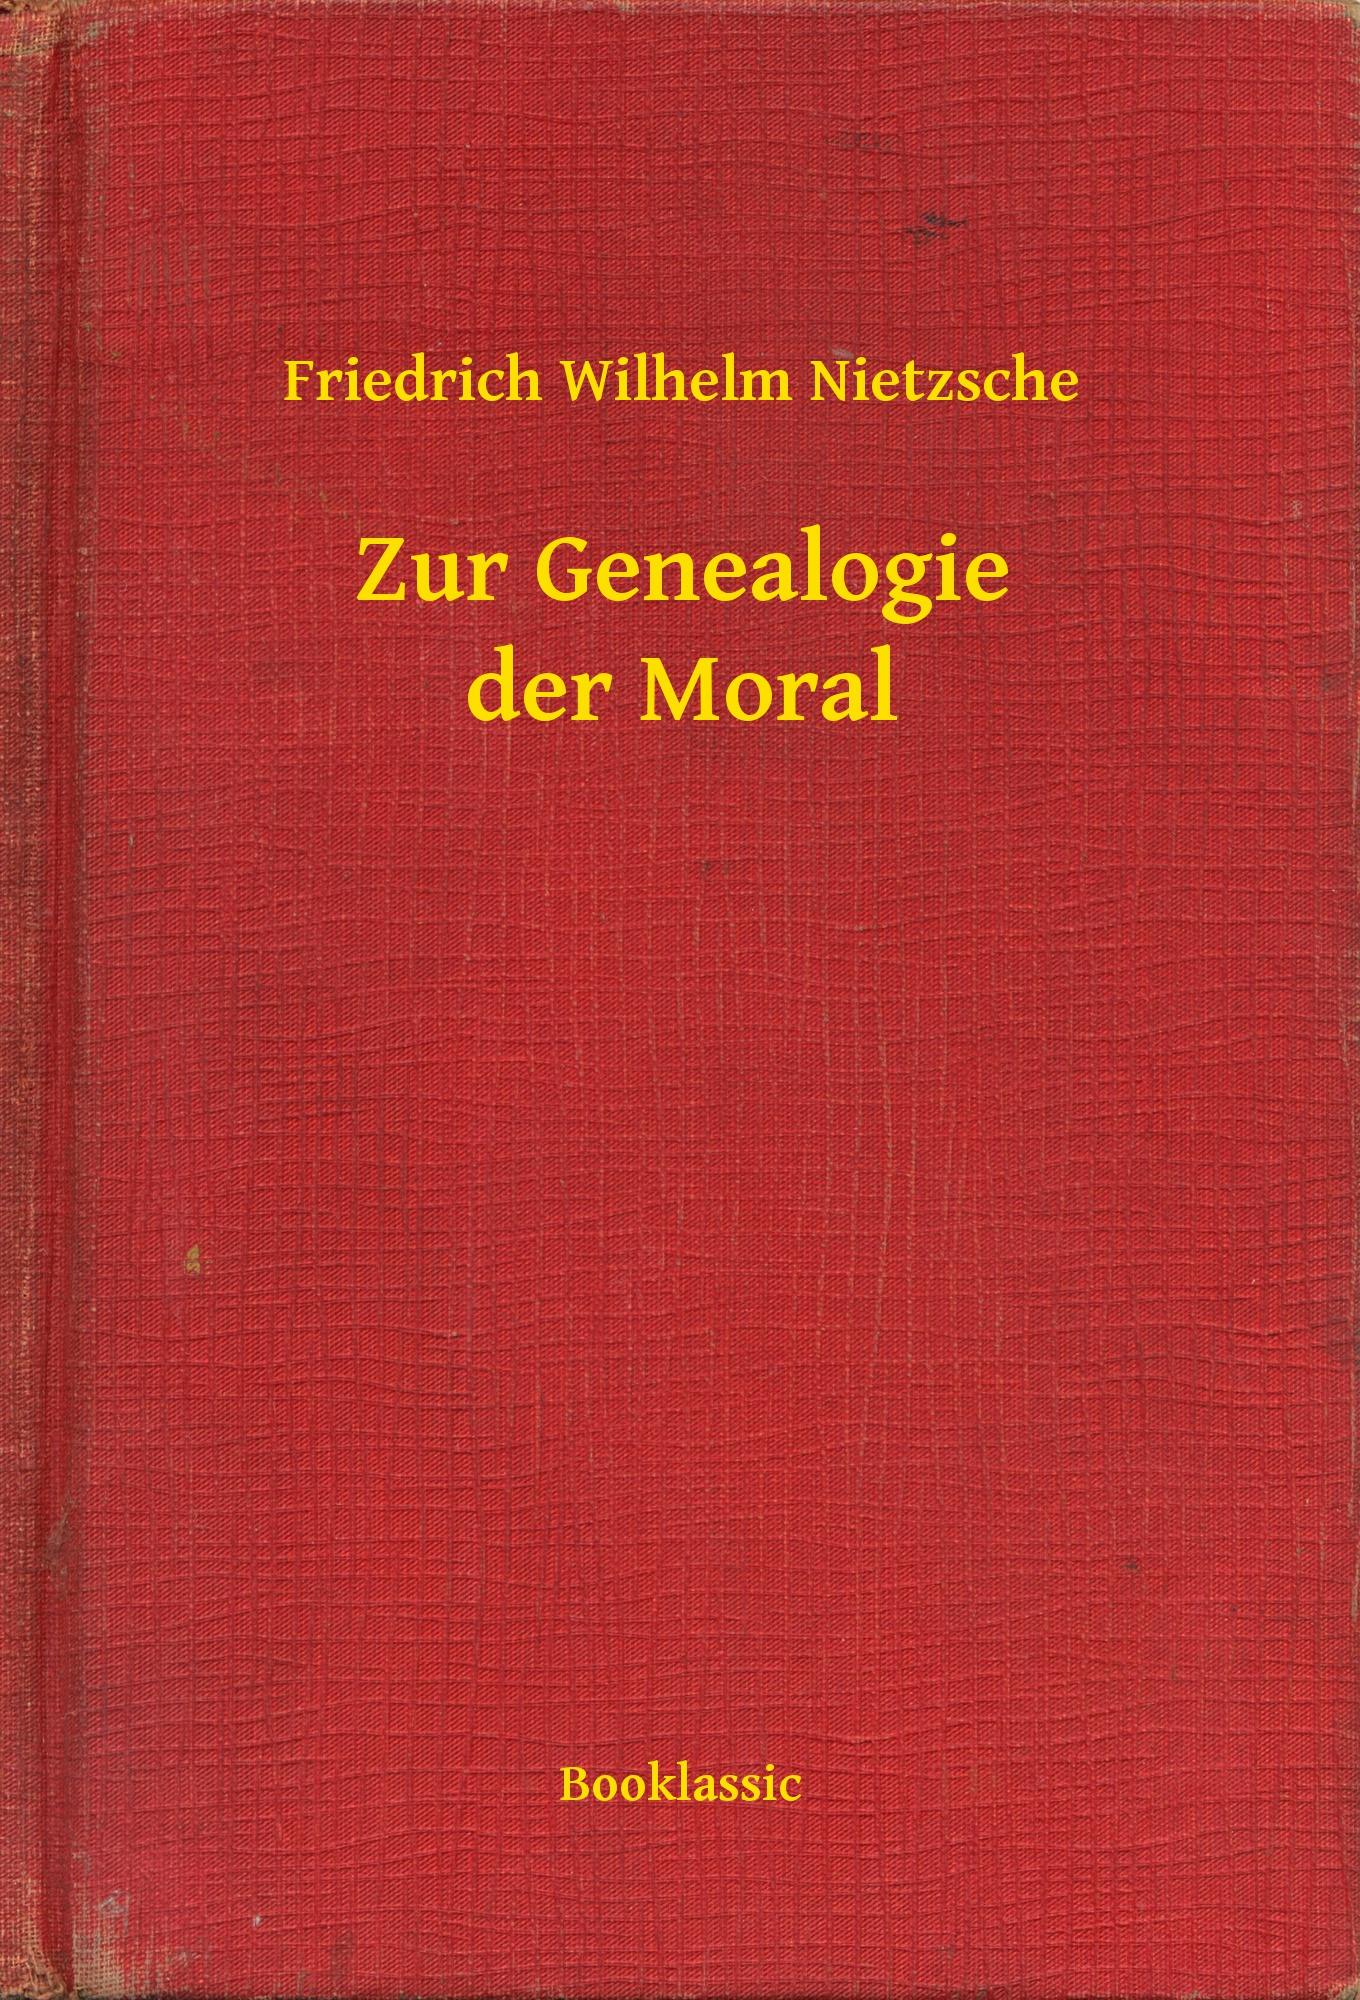 Zur Genealogie der Moral - Friedrich Wilhelm Nietzsche